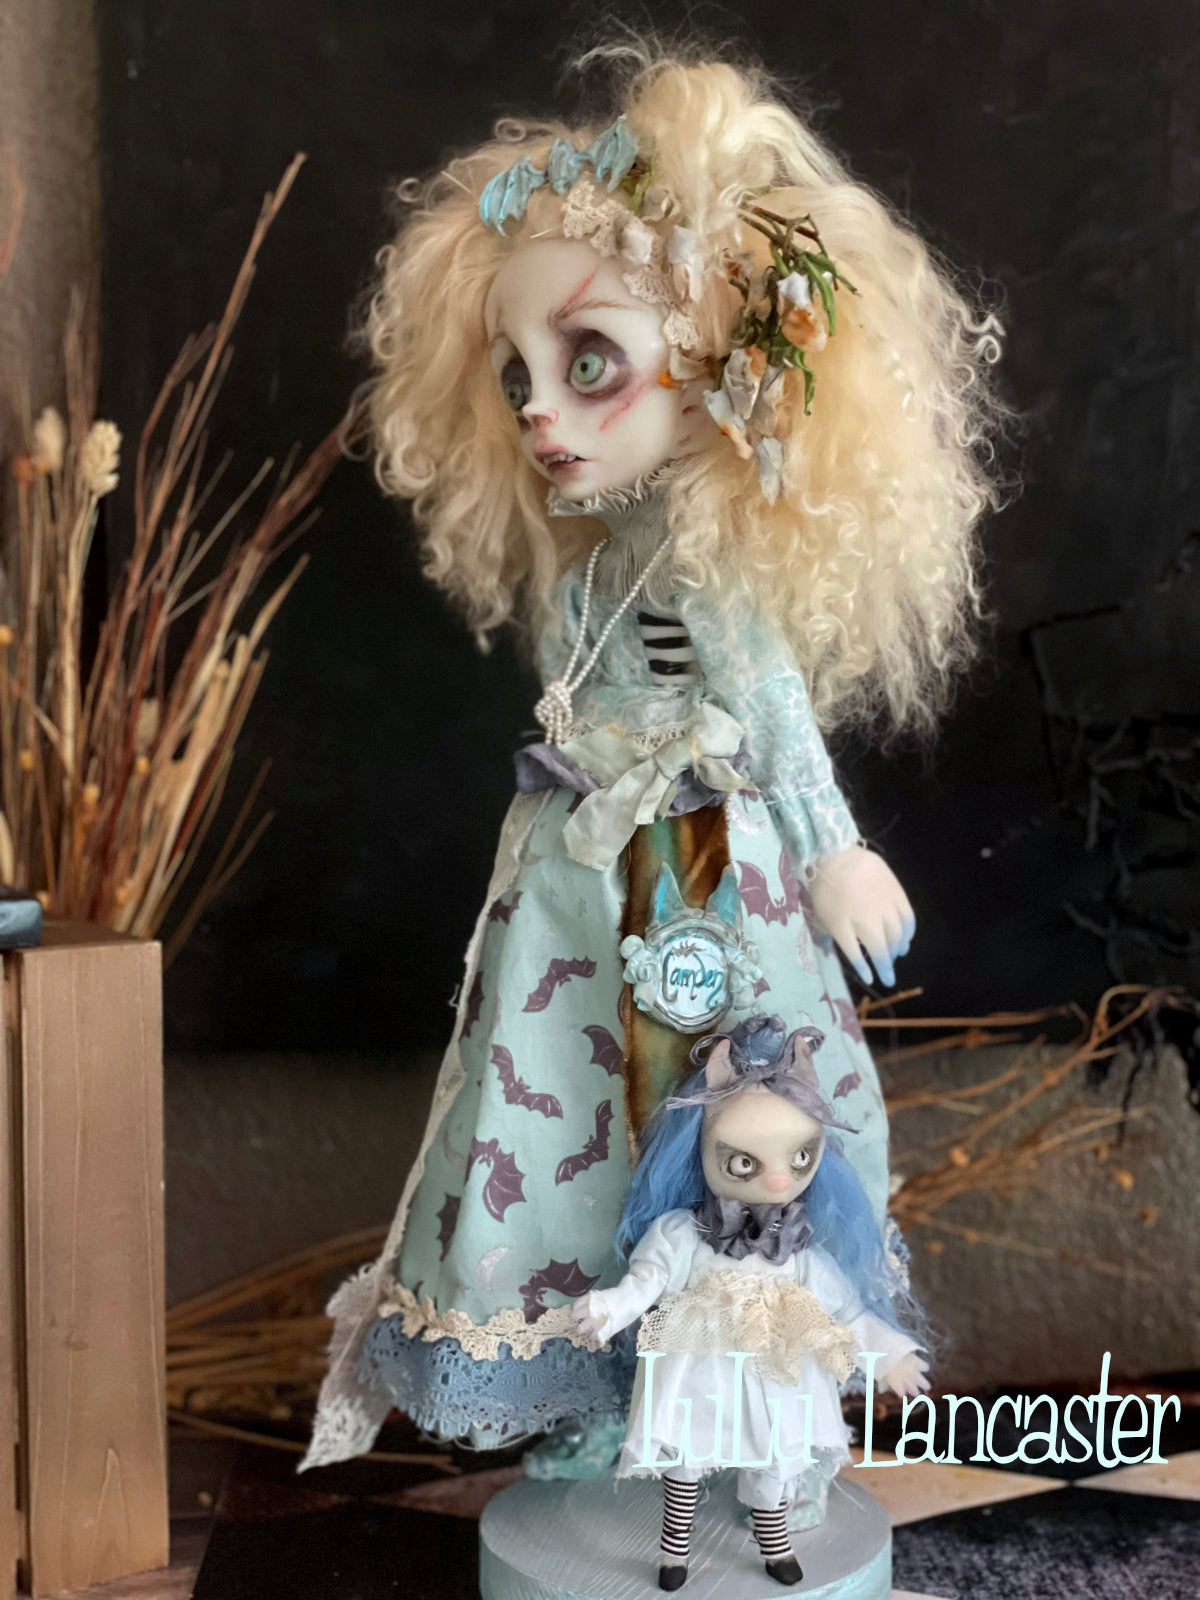 Camden the Corpse Original LuLu Lancaster Halloween Art Doll